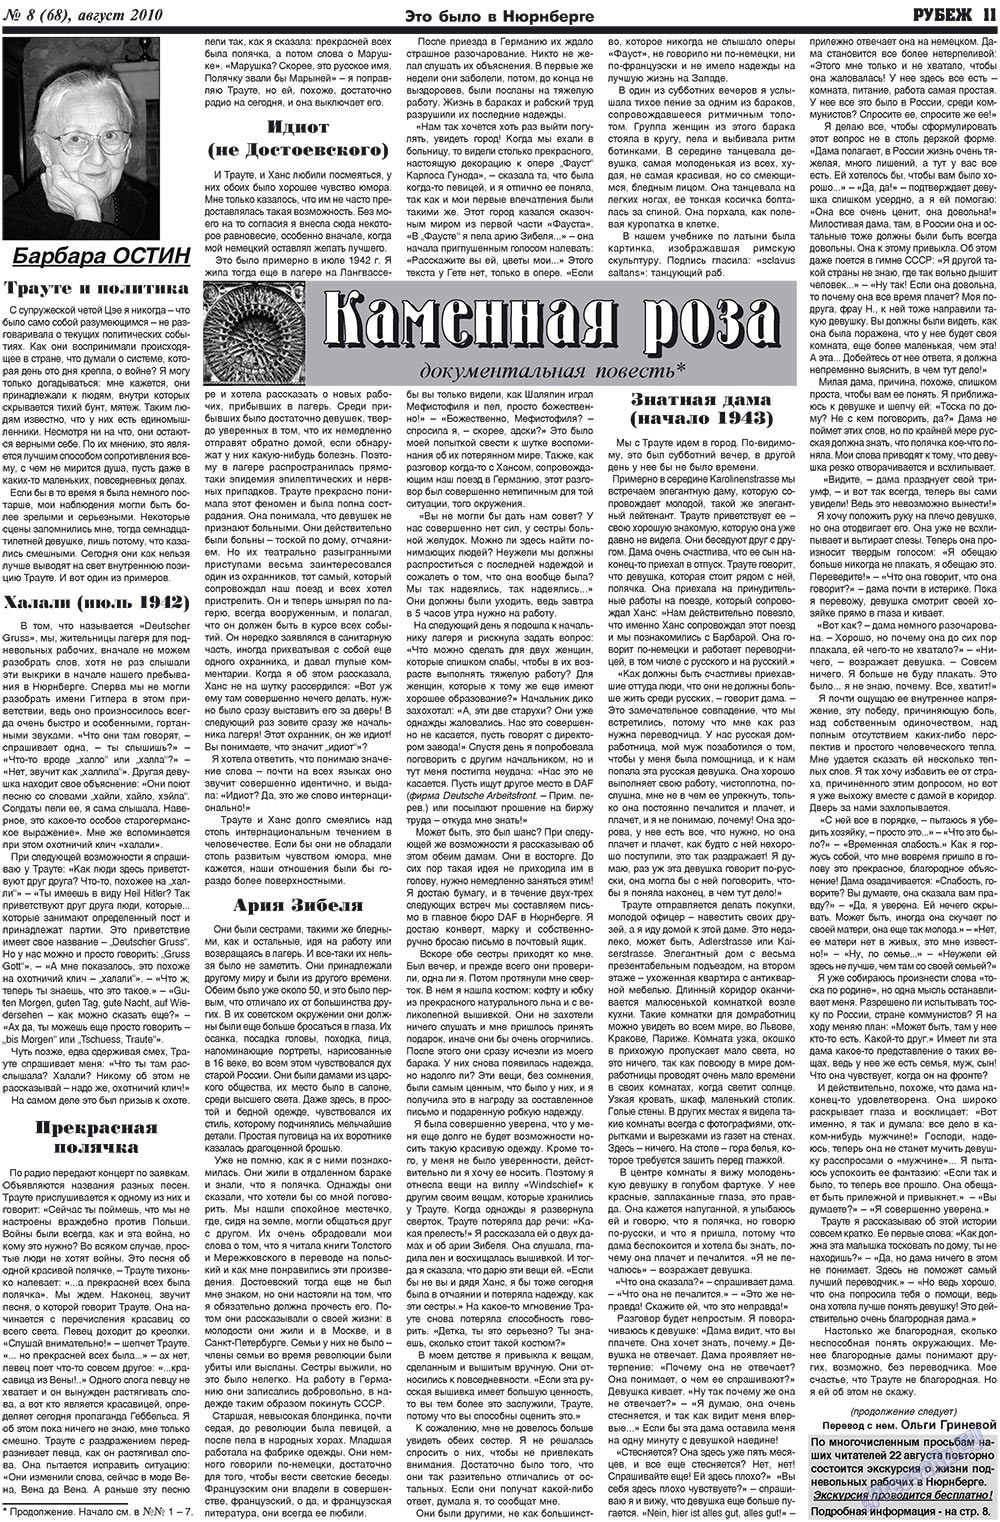 Рубеж (газета). 2010 год, номер 8, стр. 11